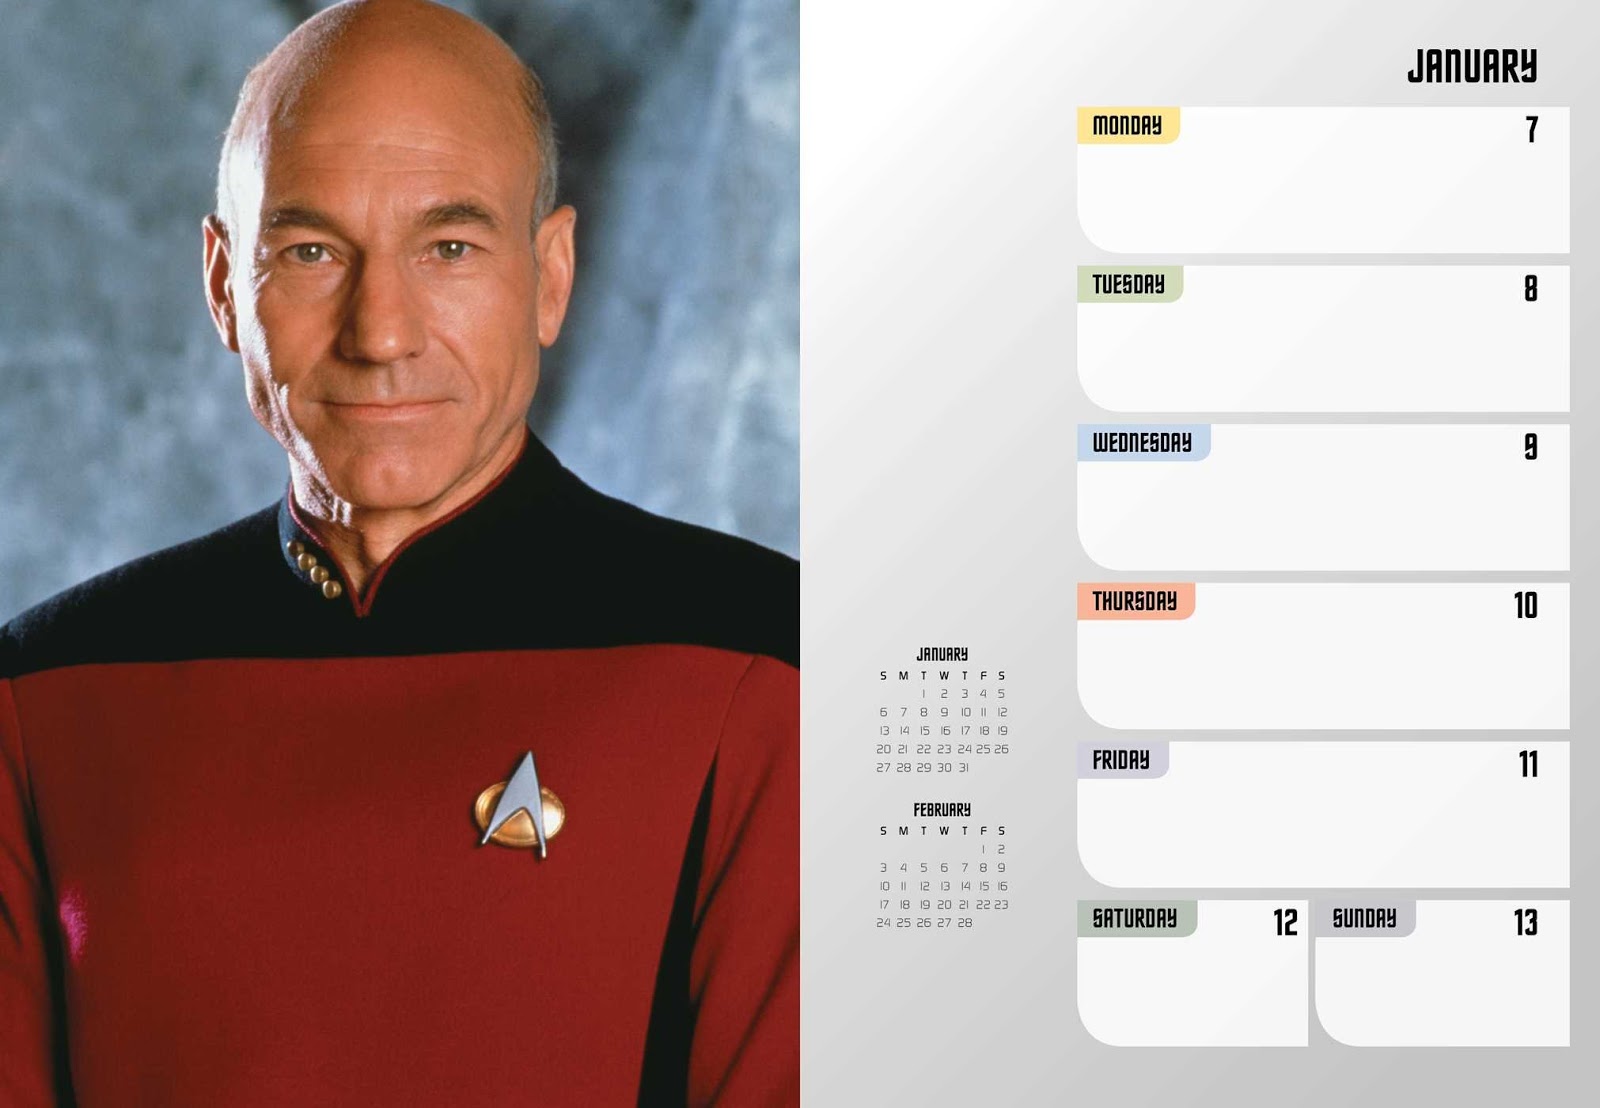 The Trek Collective 2019 Star Trek calendar range revealed